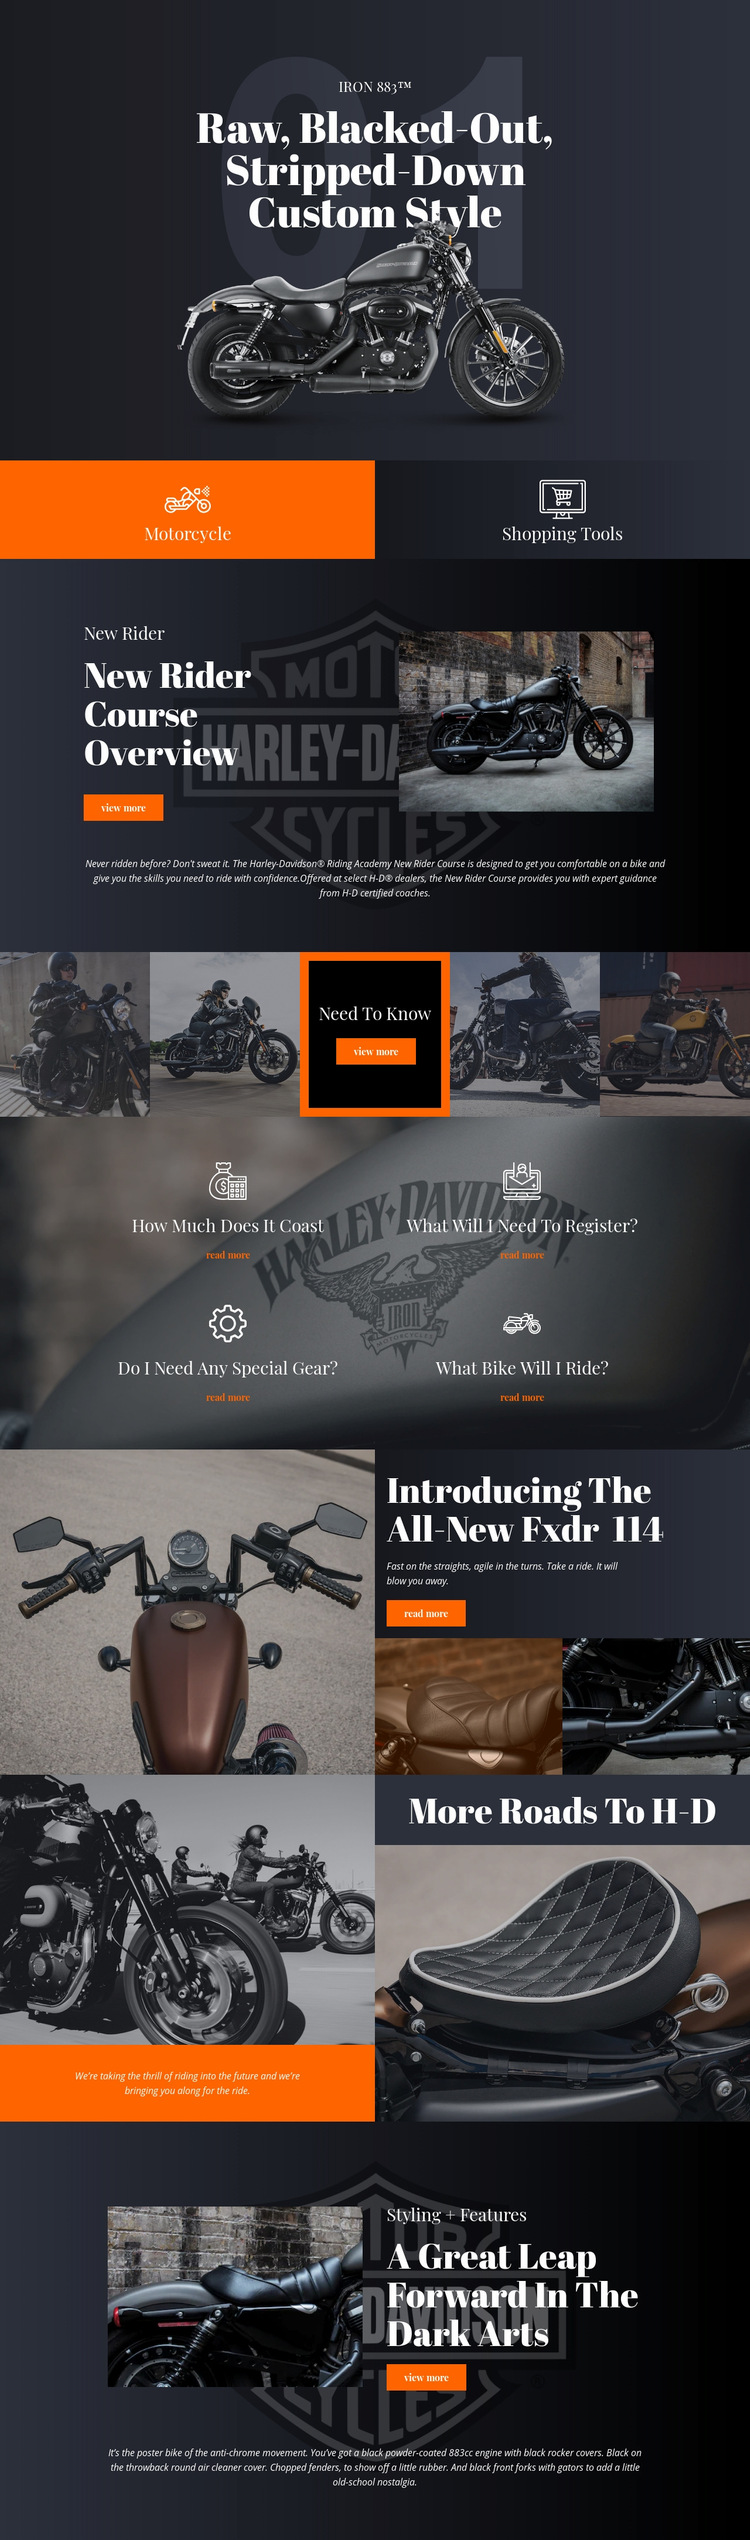 Harley Davidson Web Page Design